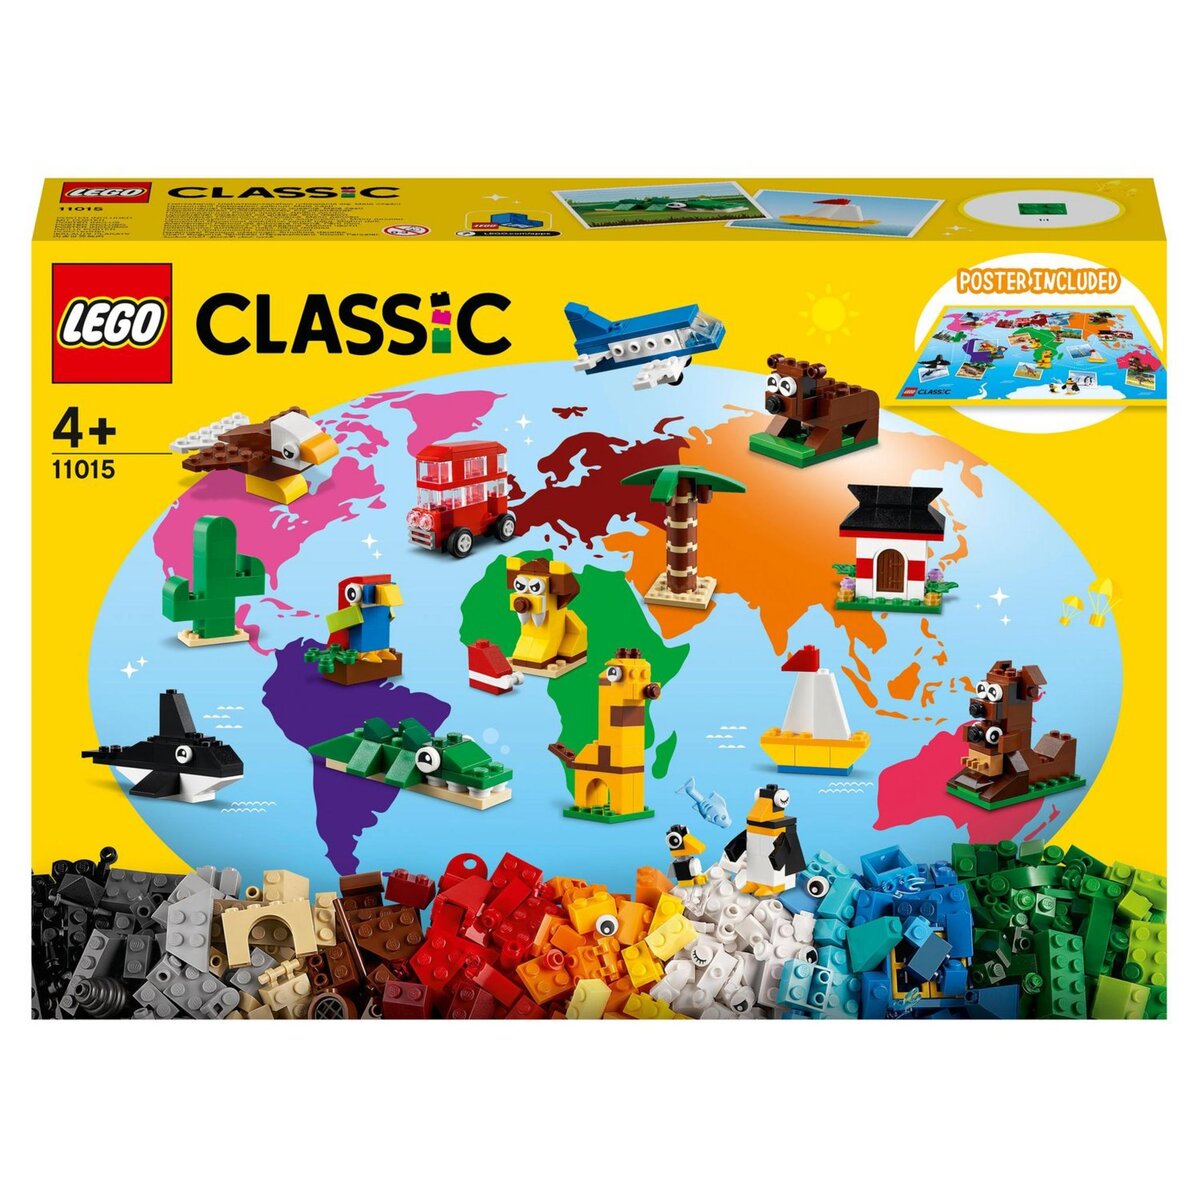 LEGO Classic Boîte de briques créatives deluxe - 10698